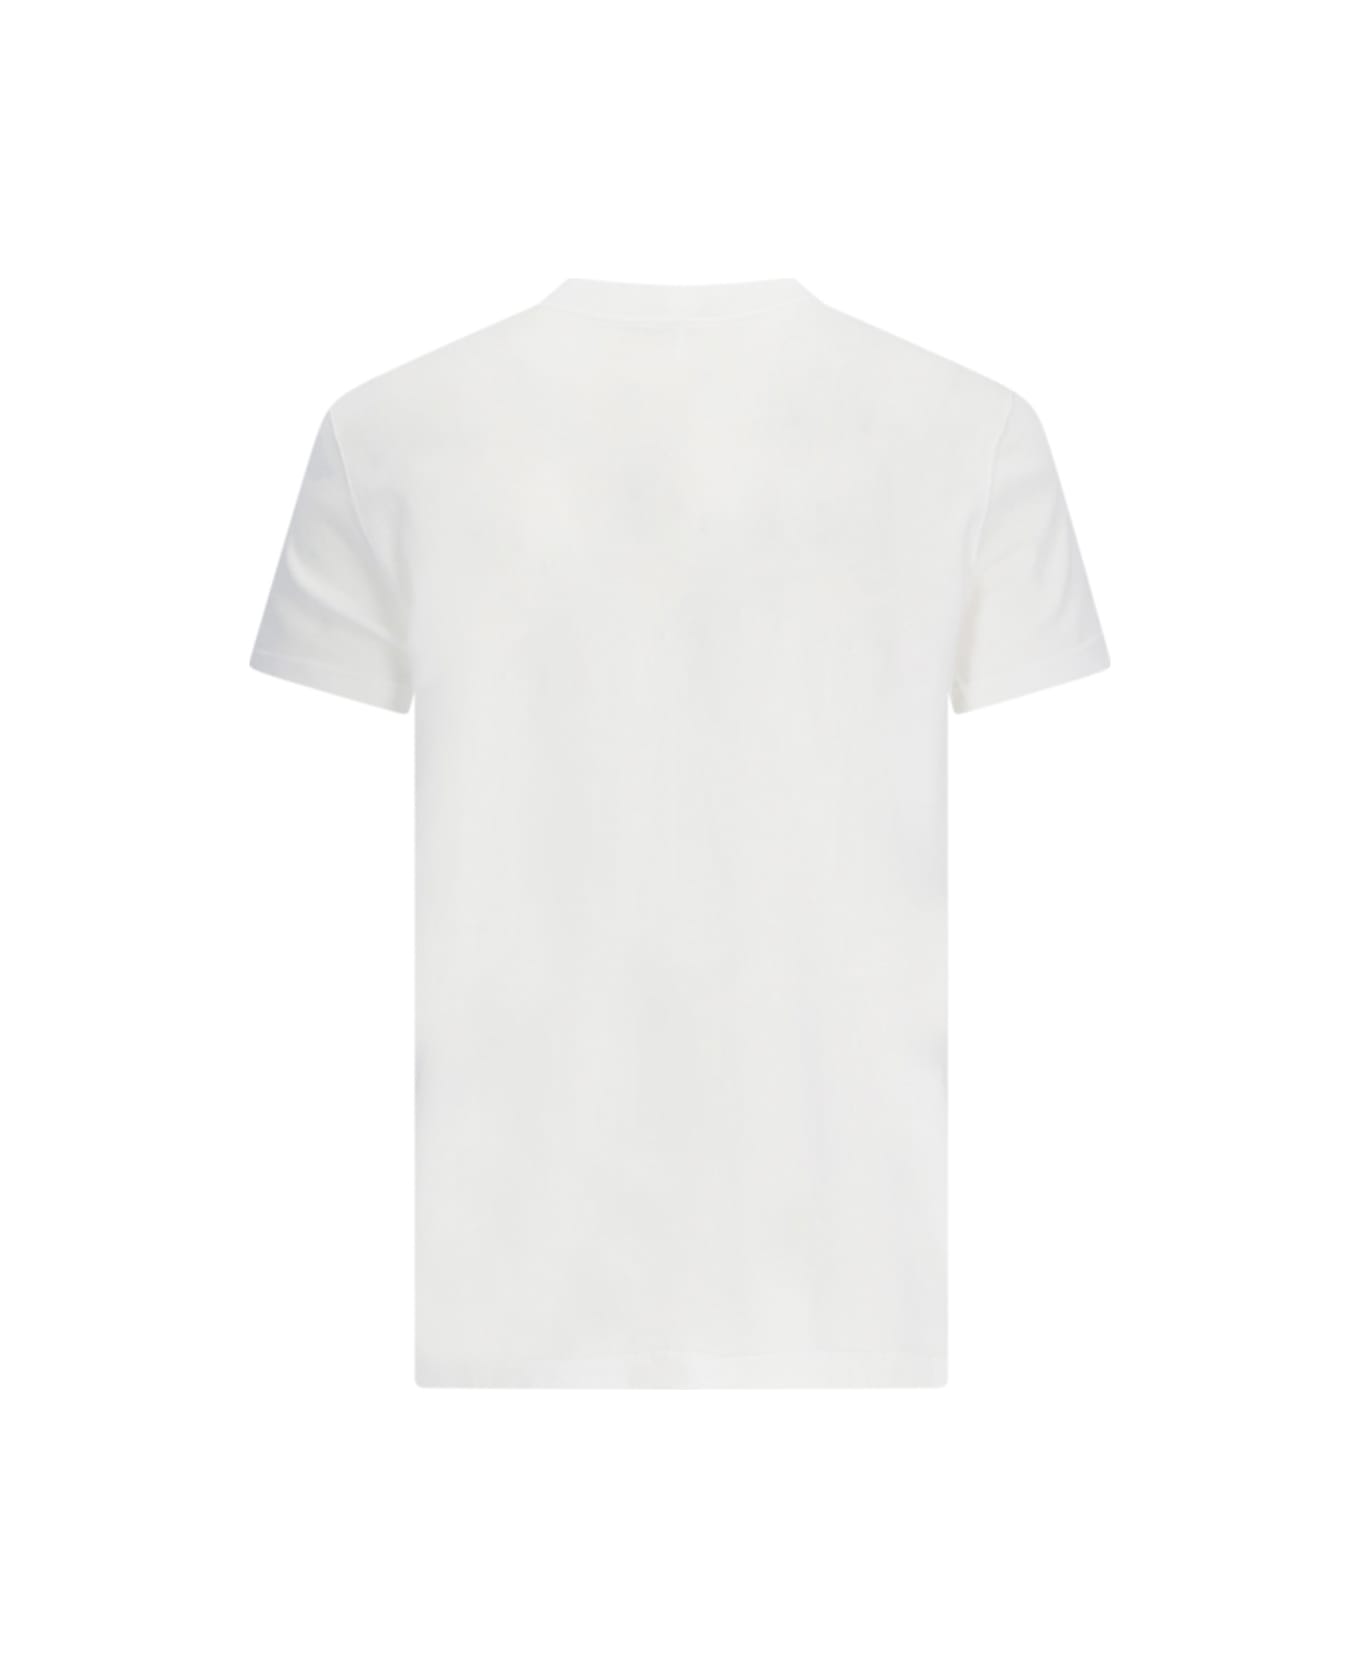 DRKSHDW T-shirt - White シャツ